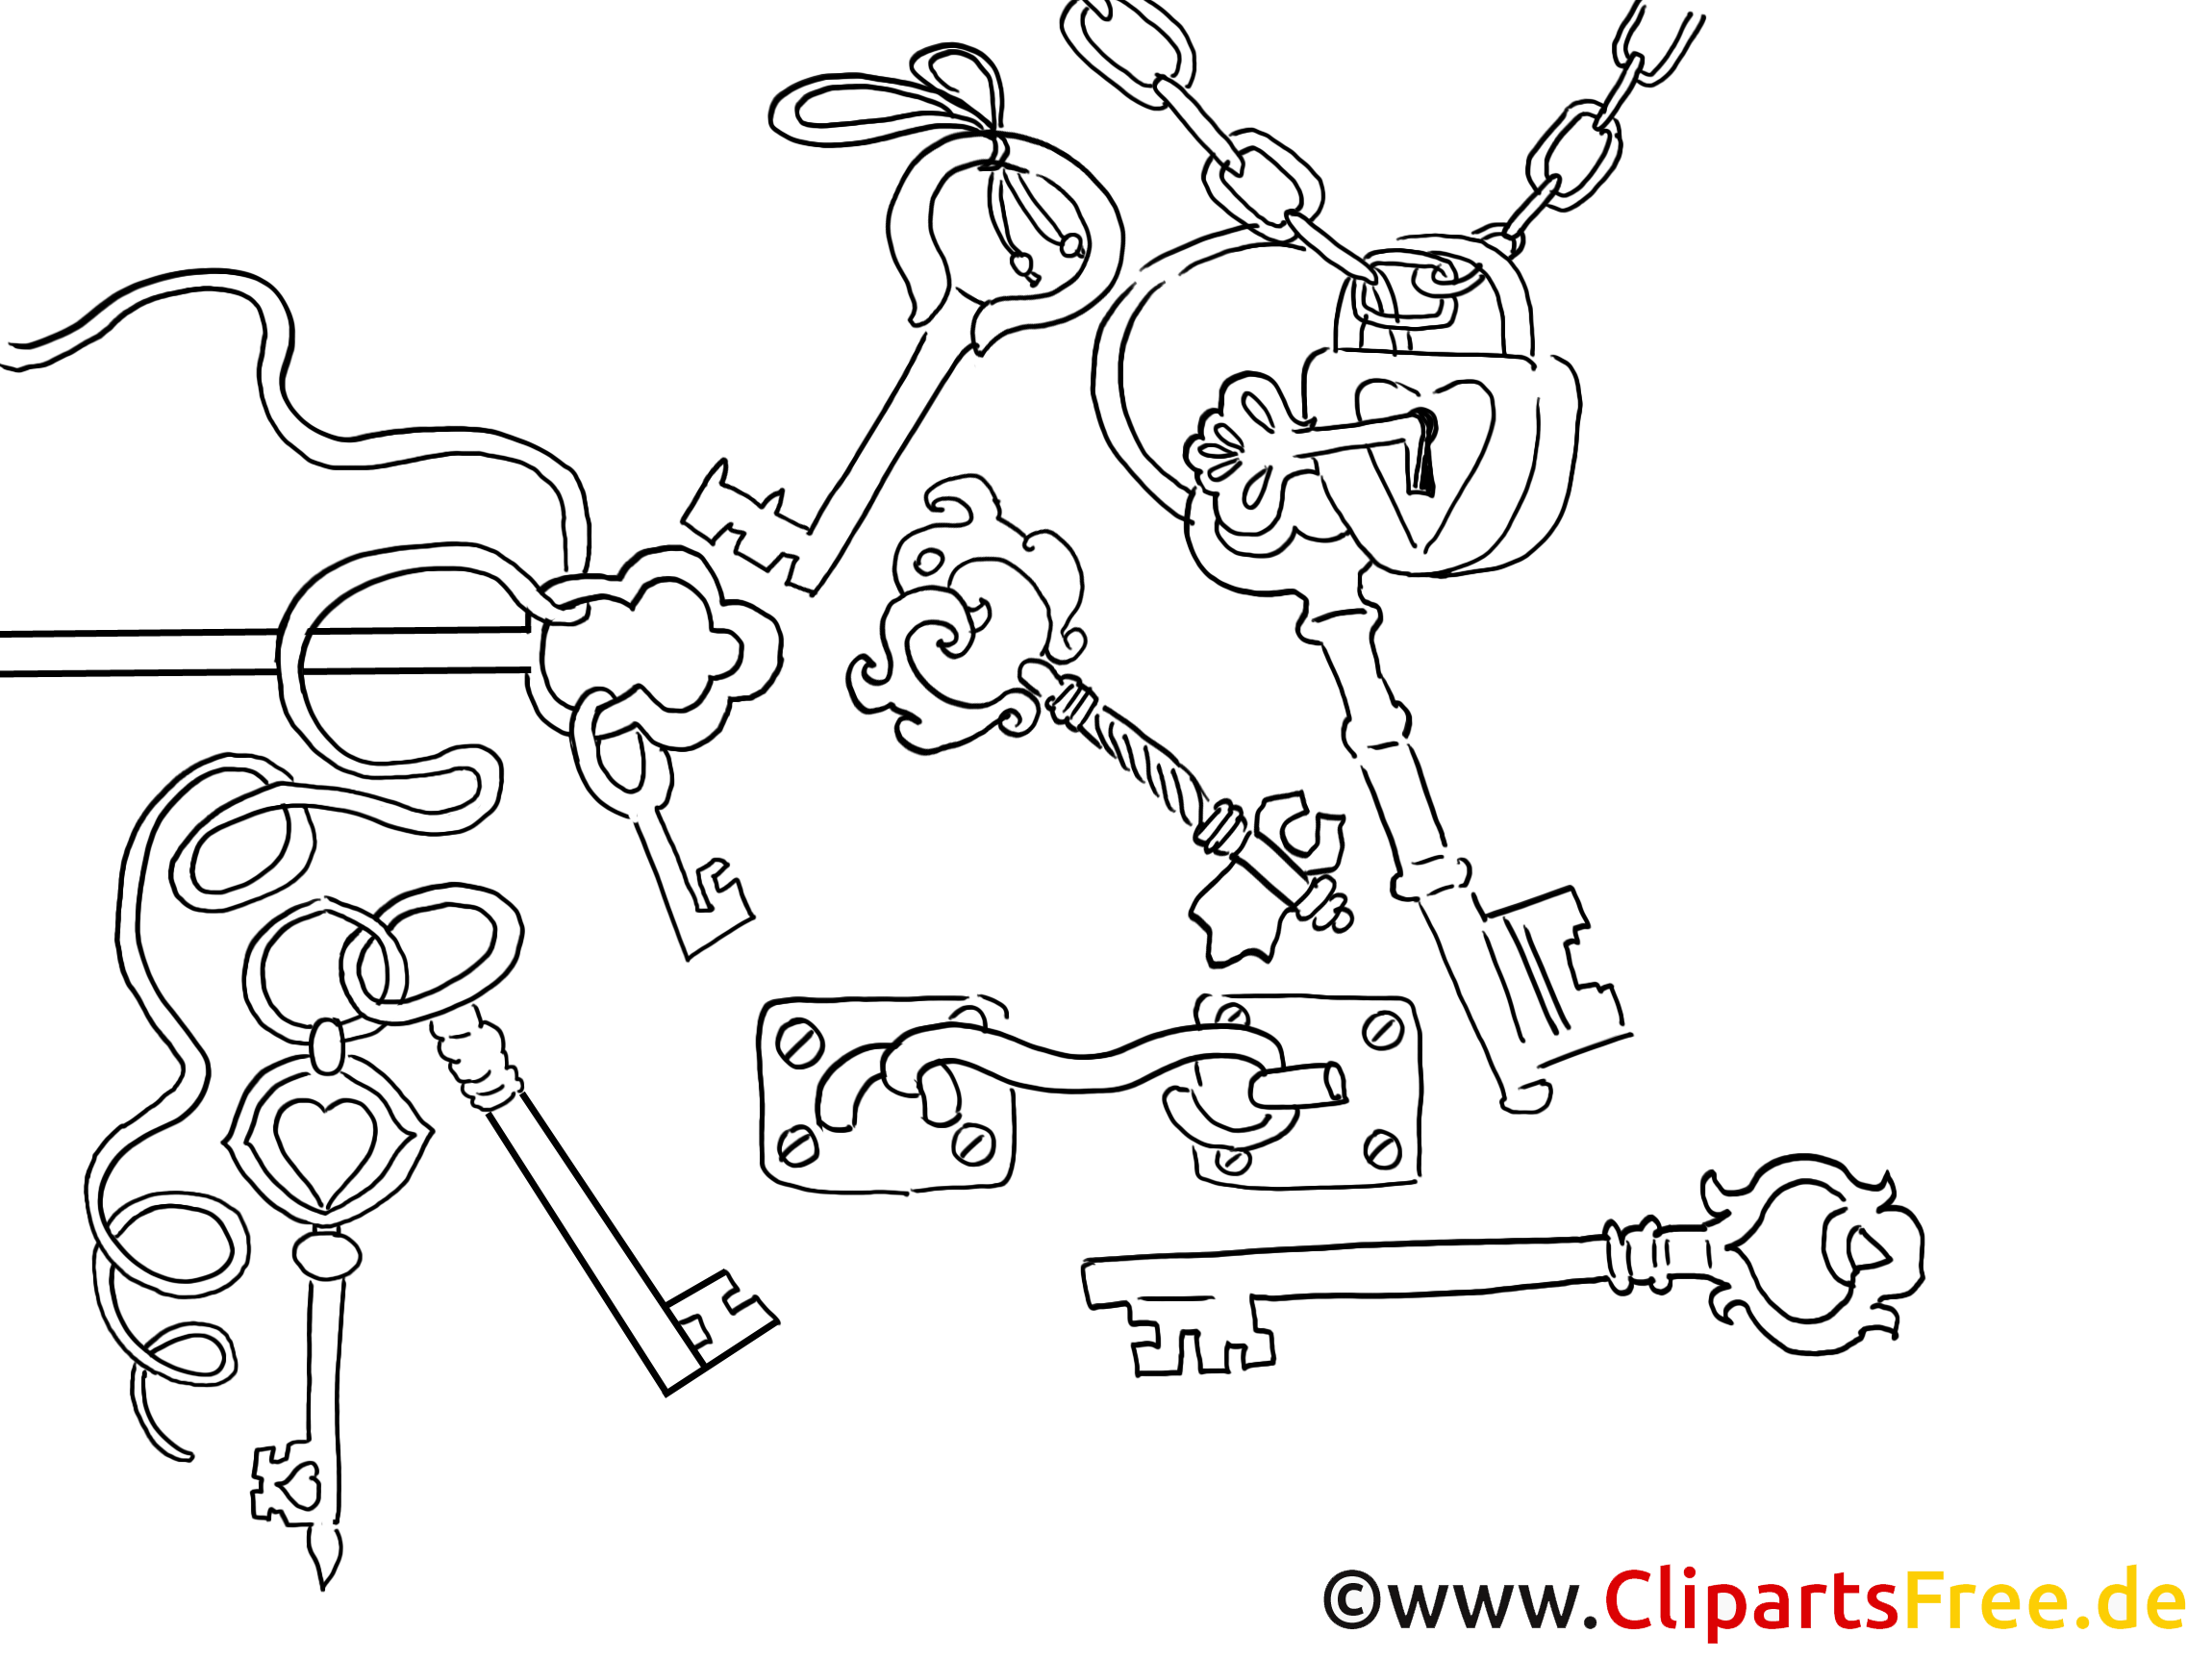 Clés clipart – Divers dessins à colorier